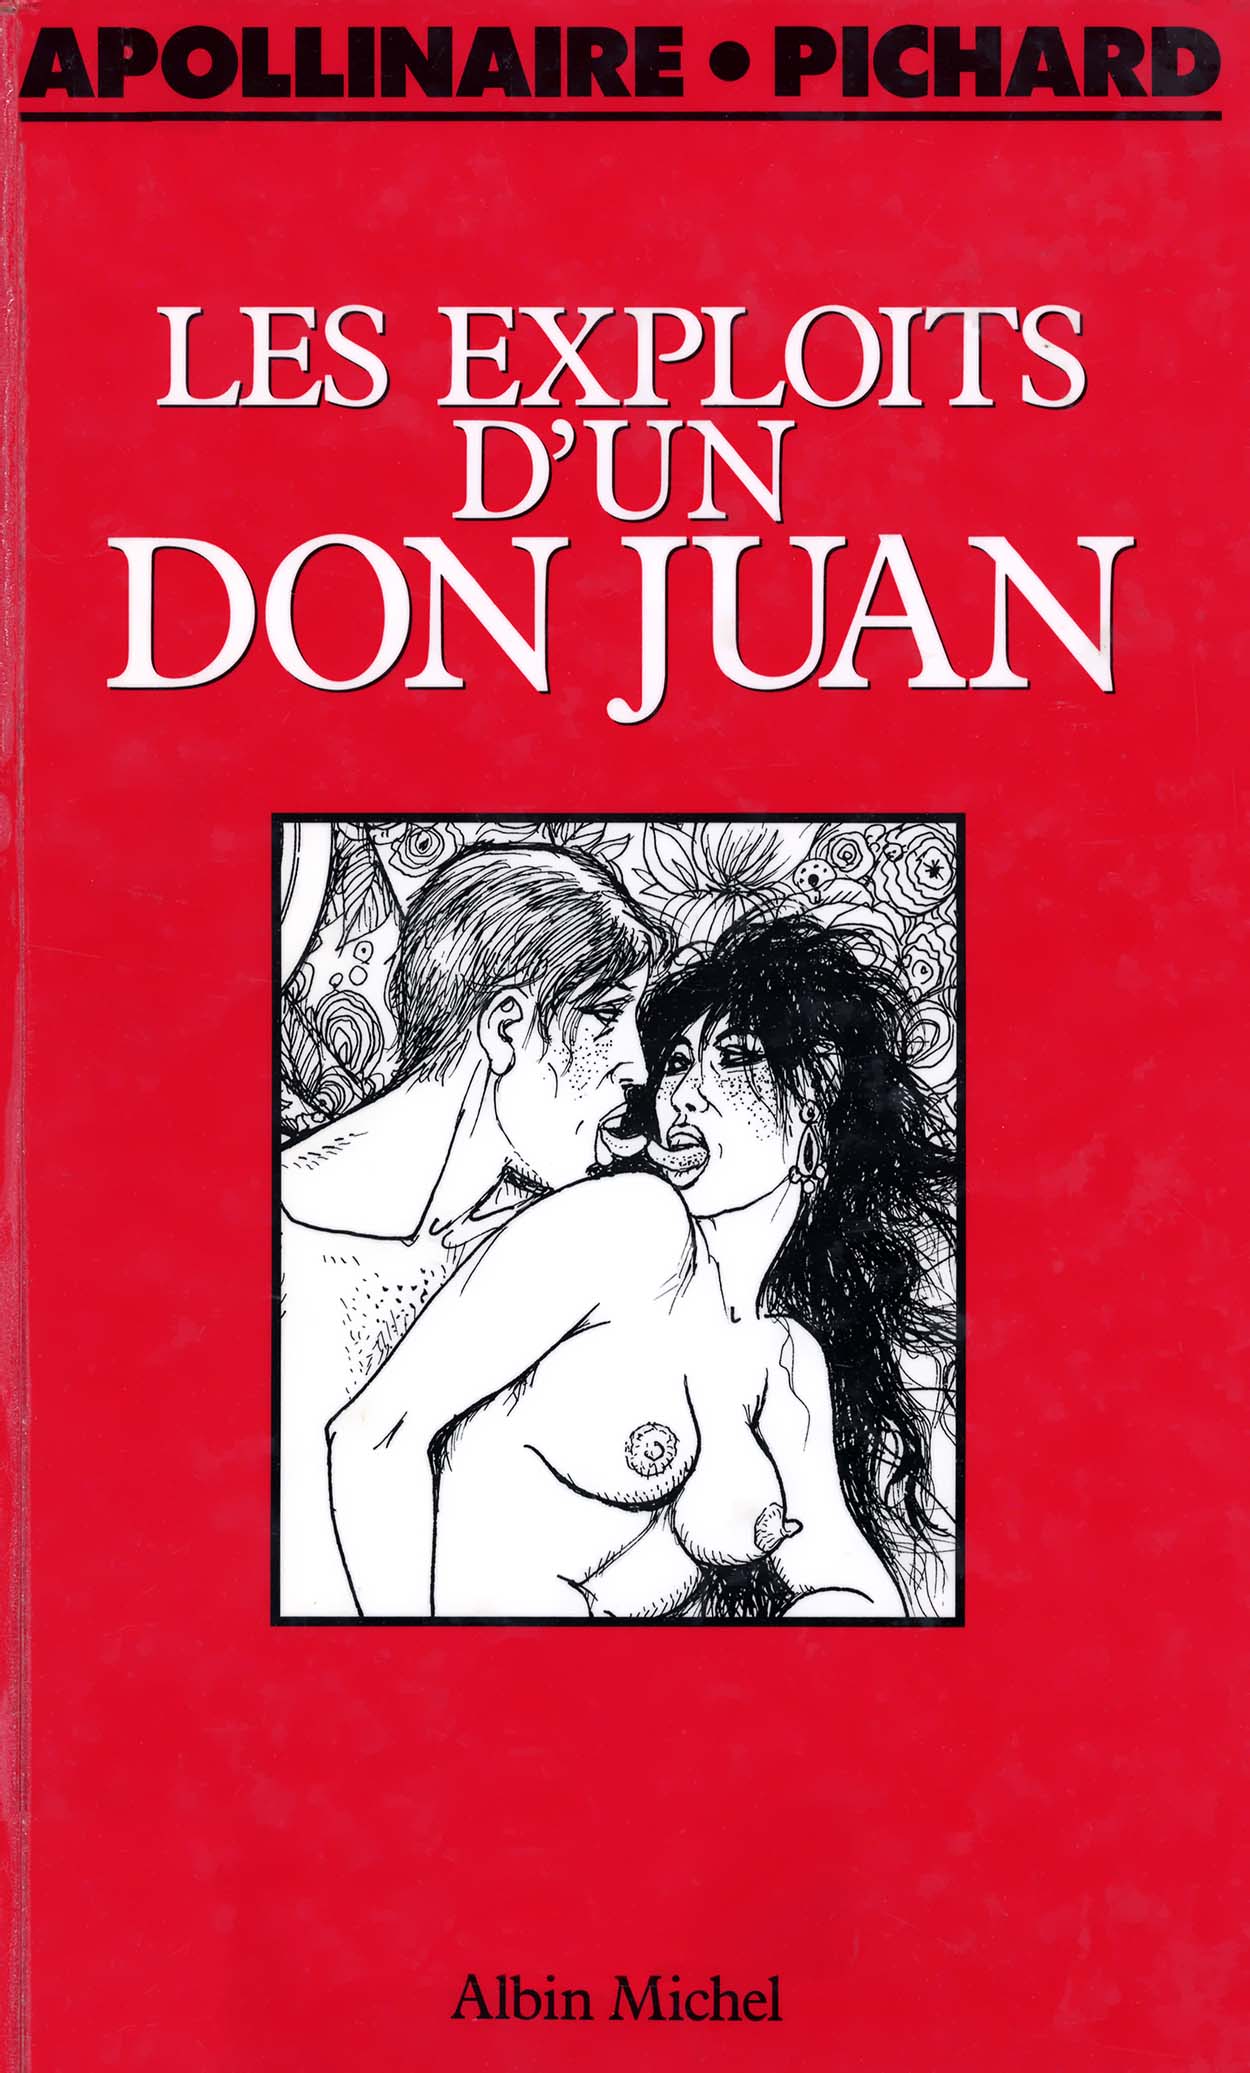 Les exploits dun Don Juan